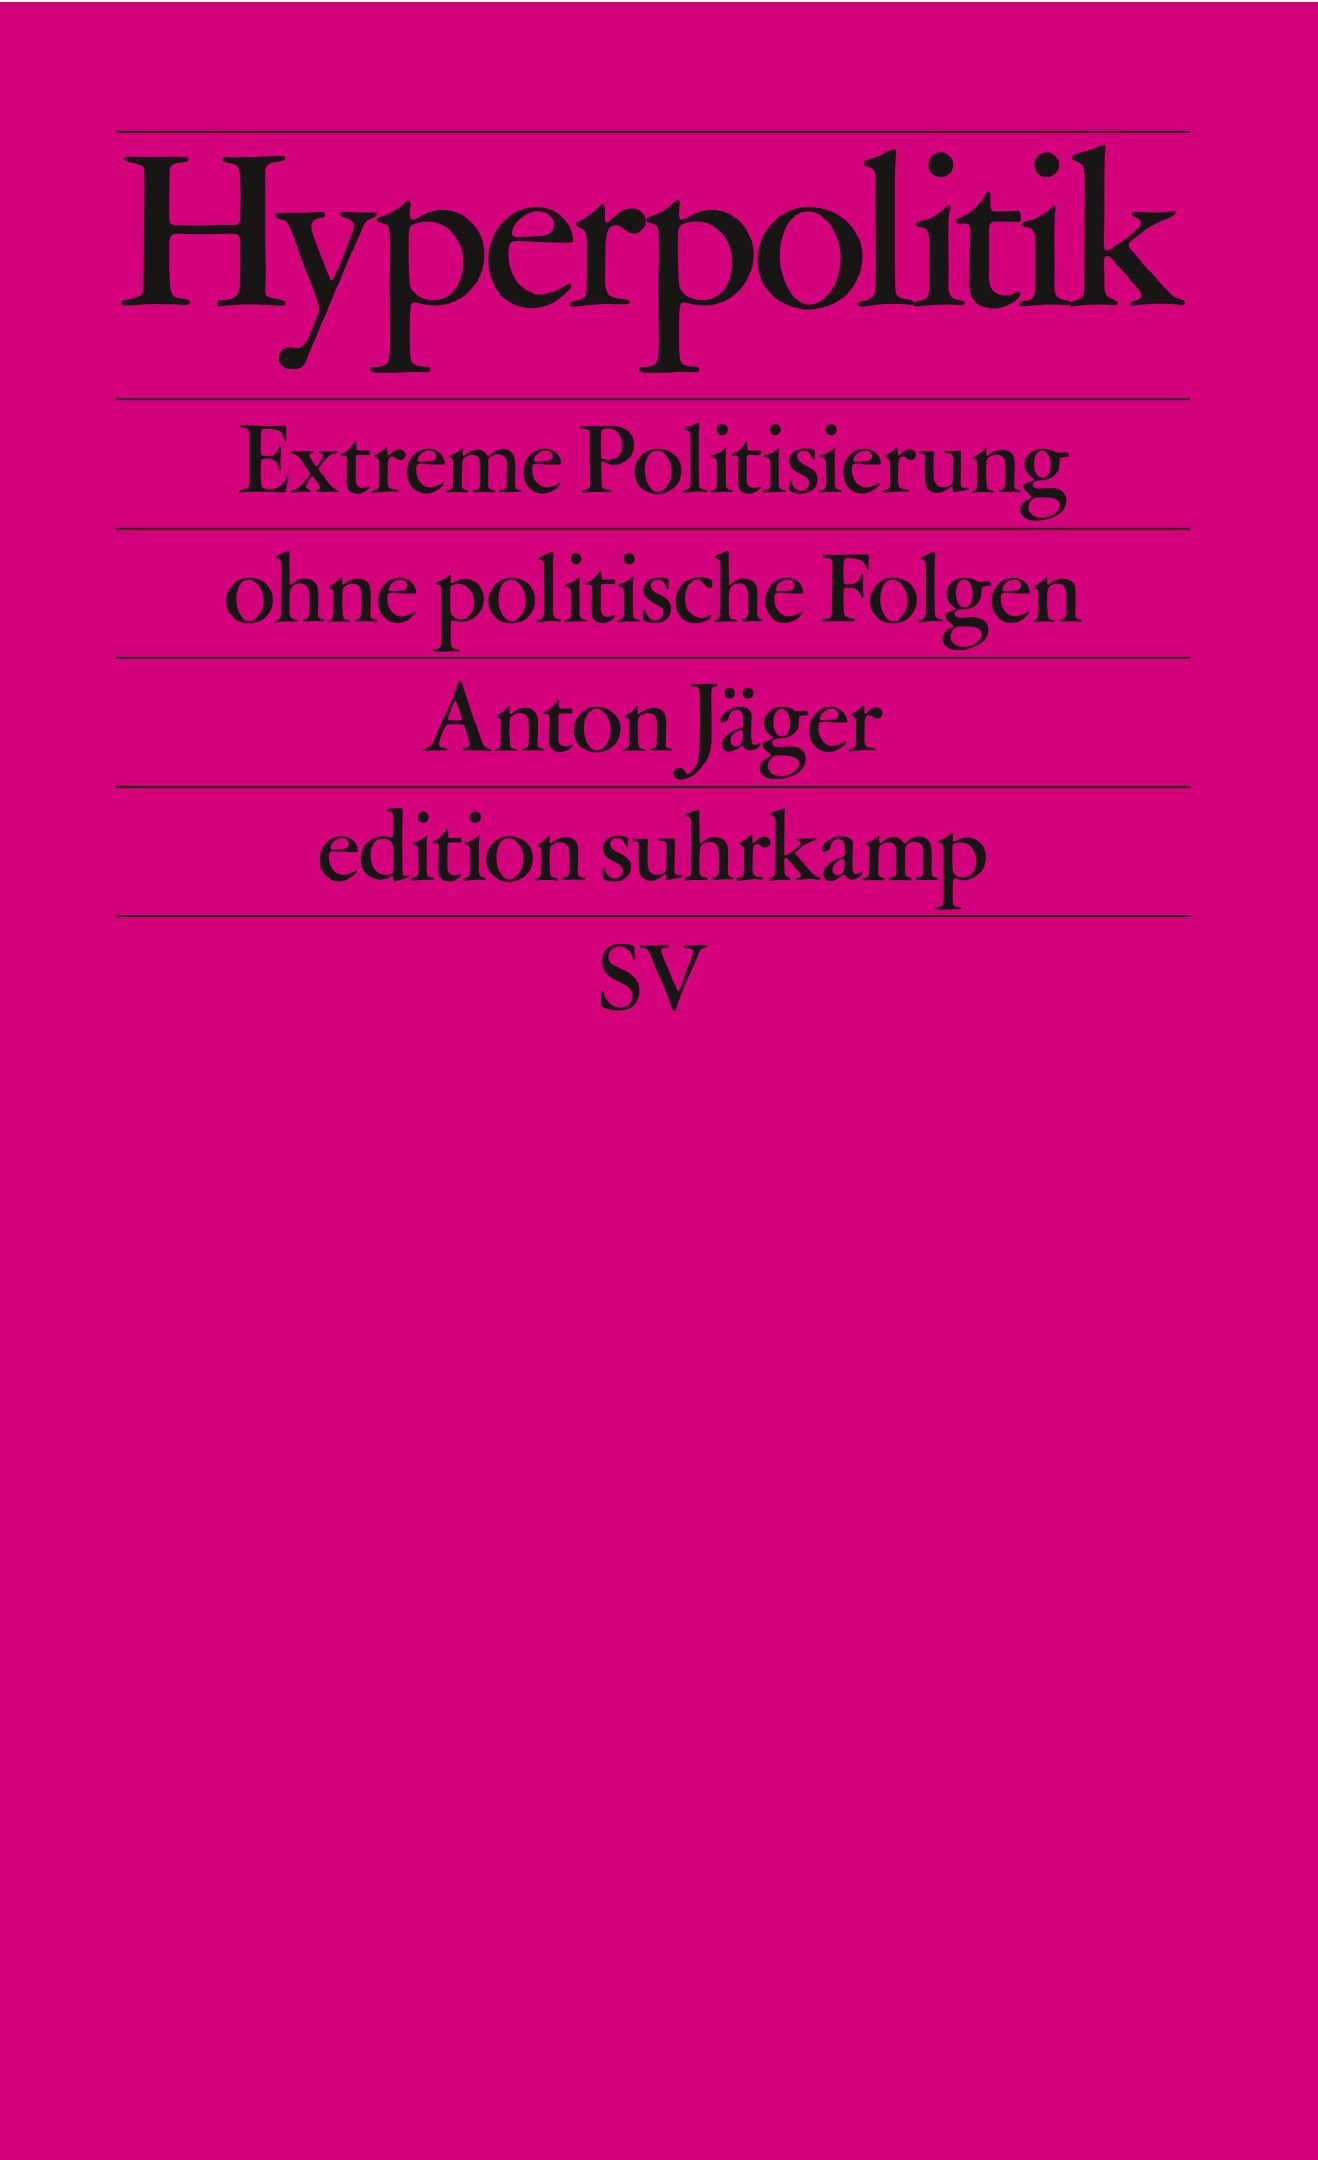 Anton Jäger: Hyperpolitik (Paperback, German language, Suhrkamp)